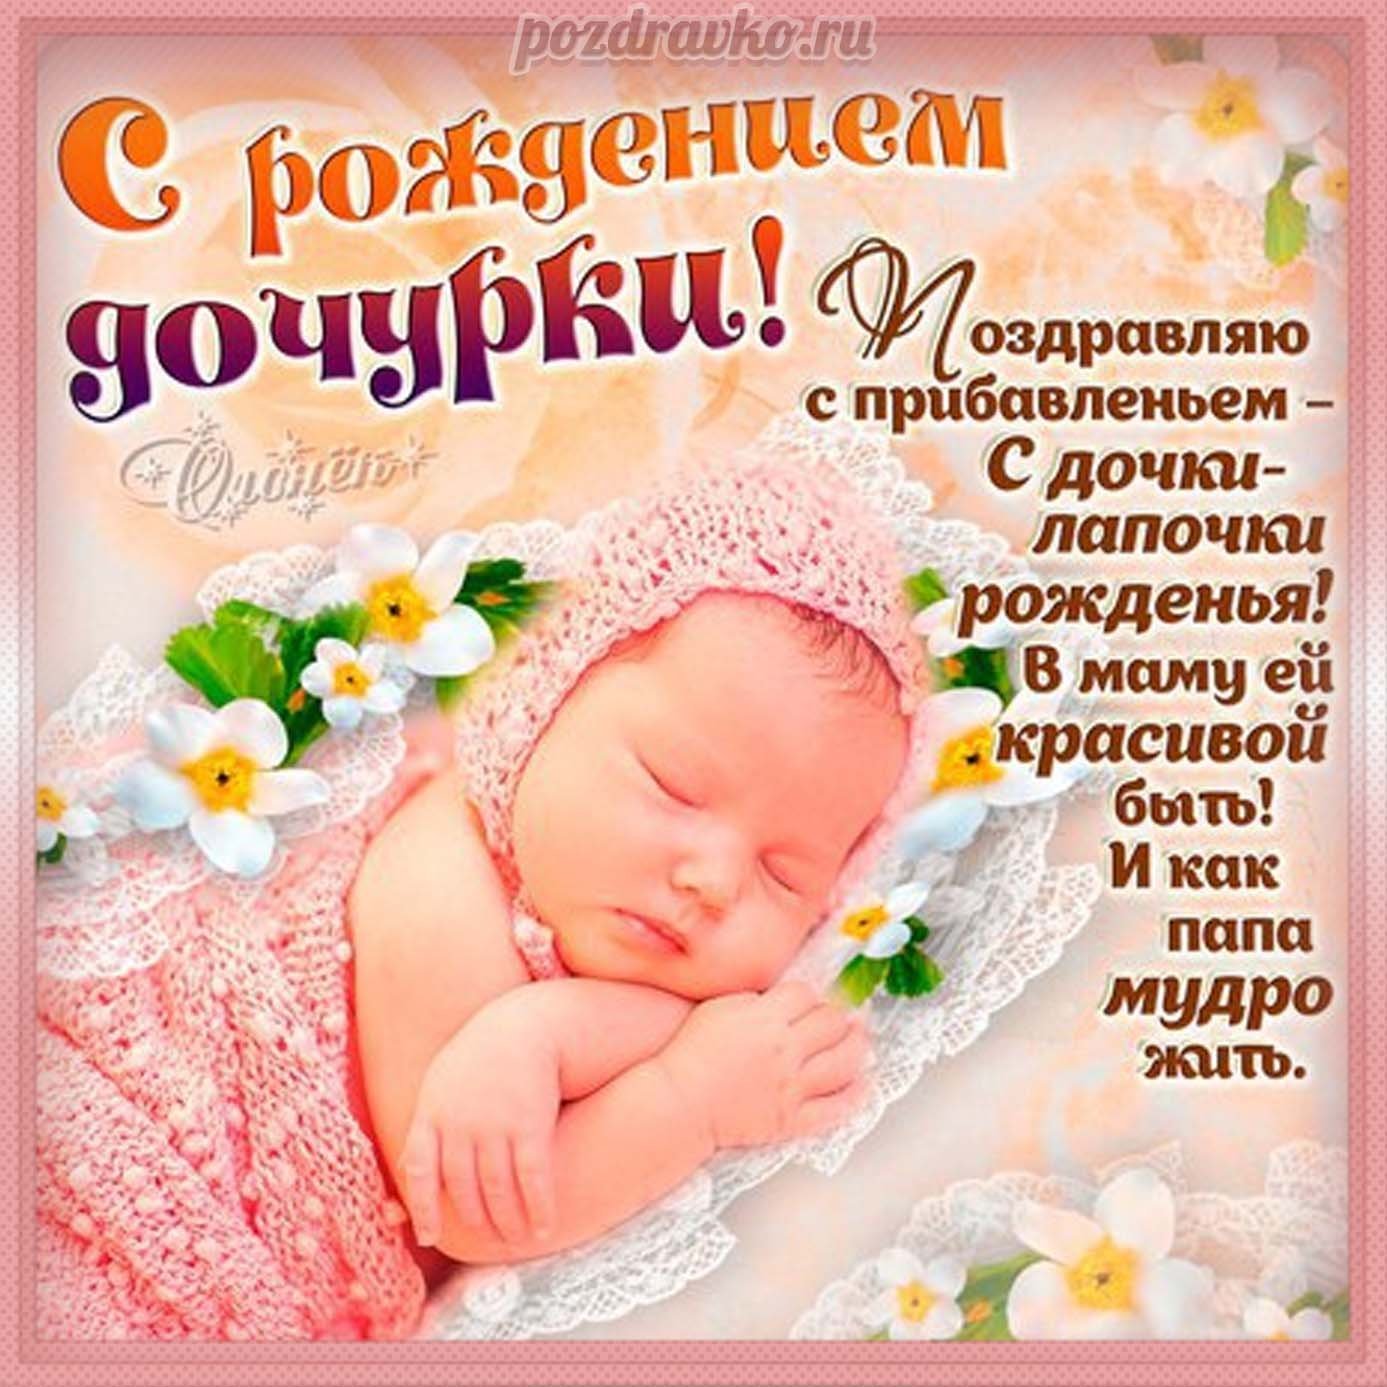 Поздравления с рождением малыша: красивые слова для души и сердца